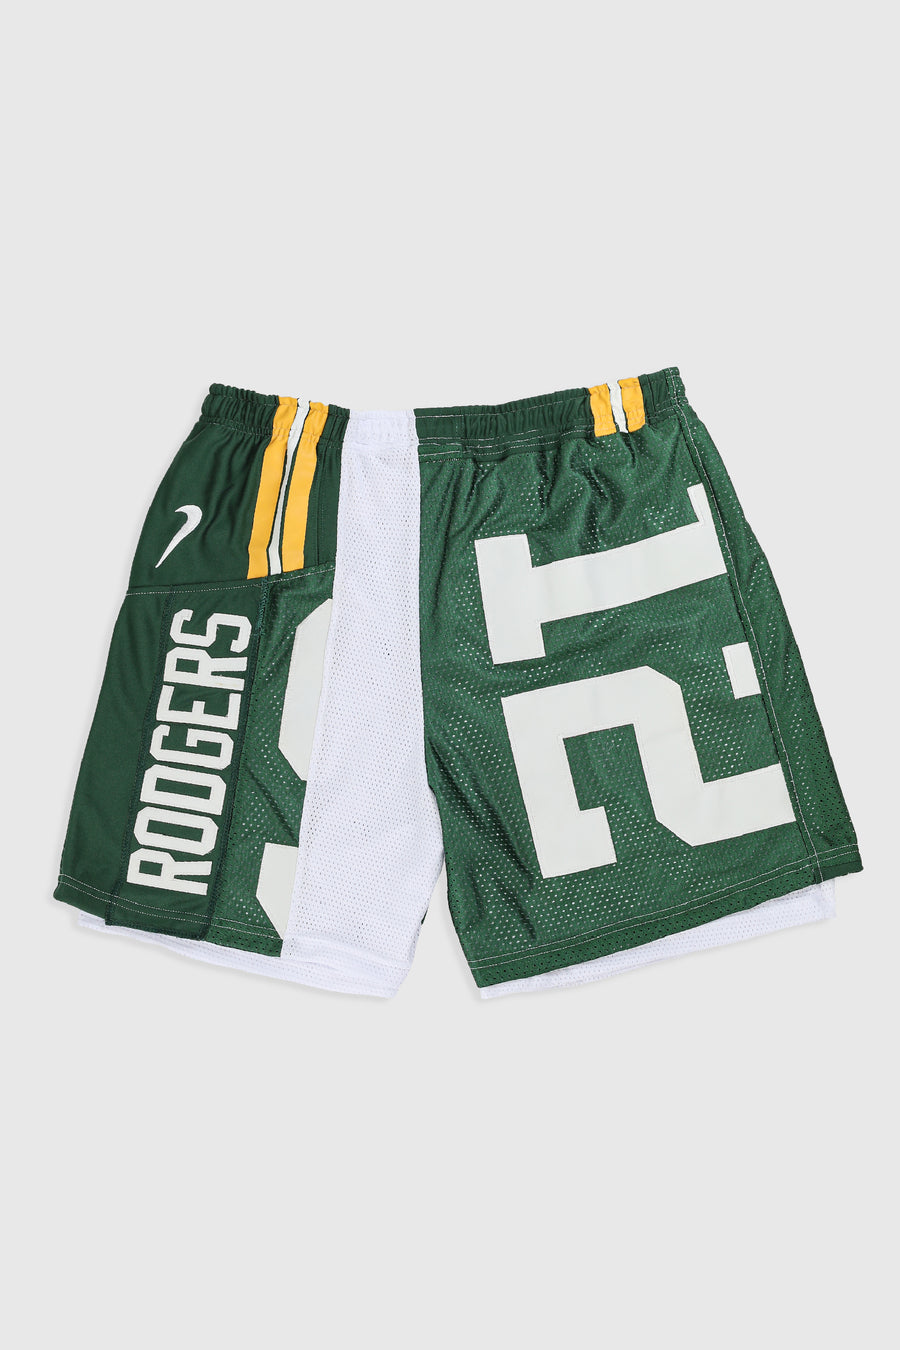 Unisex Rework Packers NFL Jersey Shorts - Women-XXL, Men-XL